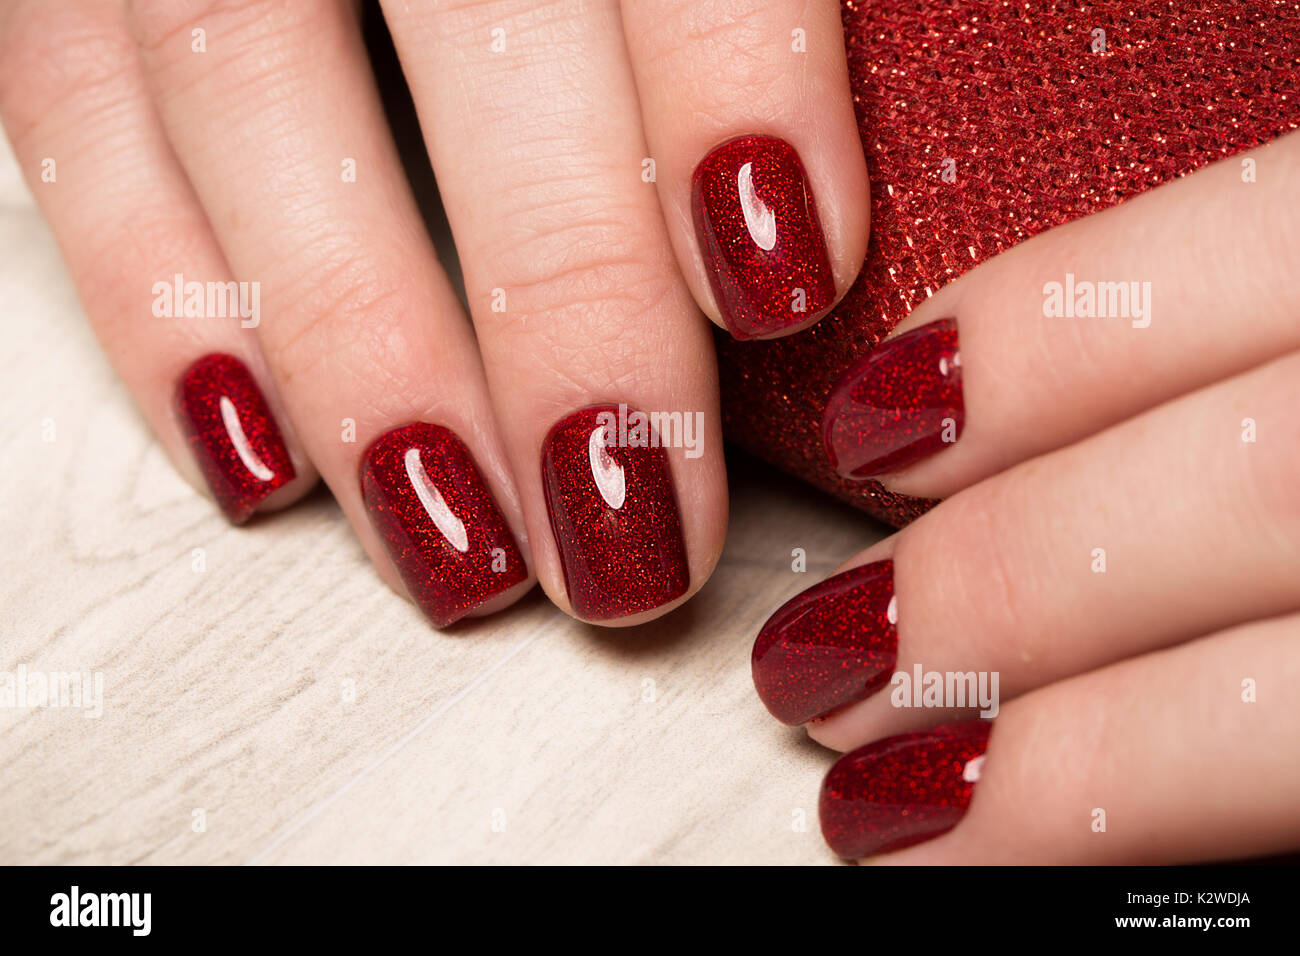 Manucure rouge fête lumineuse sur les mains. Nails design Banque D'Images